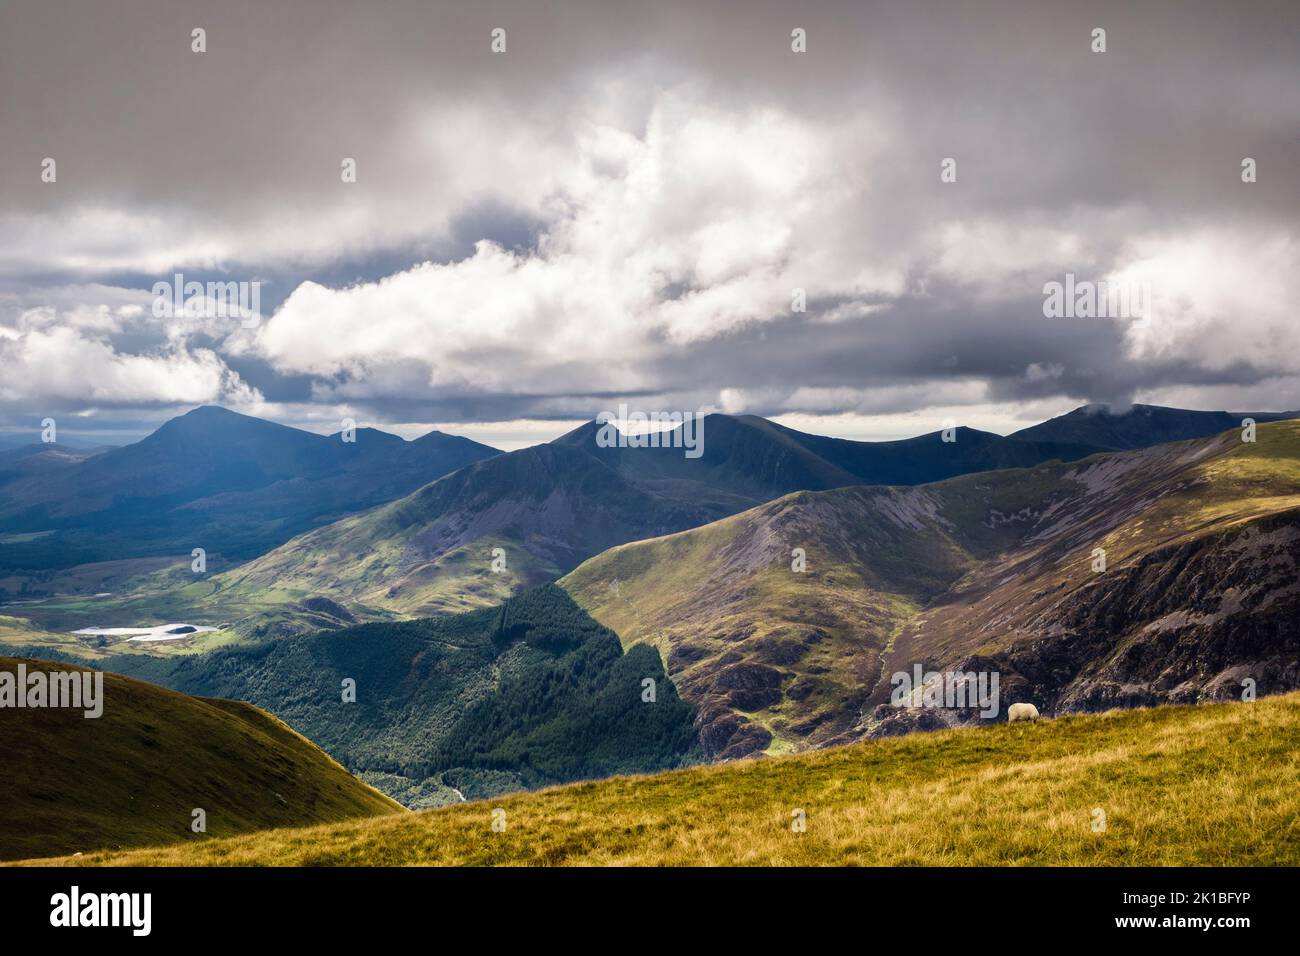 Vue sur la forêt de Beddgelert jusqu'à la chaîne de montagnes Nantlle Ridge depuis Moel Eilio dans le parc national de Snowdonia. Llanberis, Gwynedd, nord du pays de Galles, Royaume-Uni, Grande-Bretagne Banque D'Images